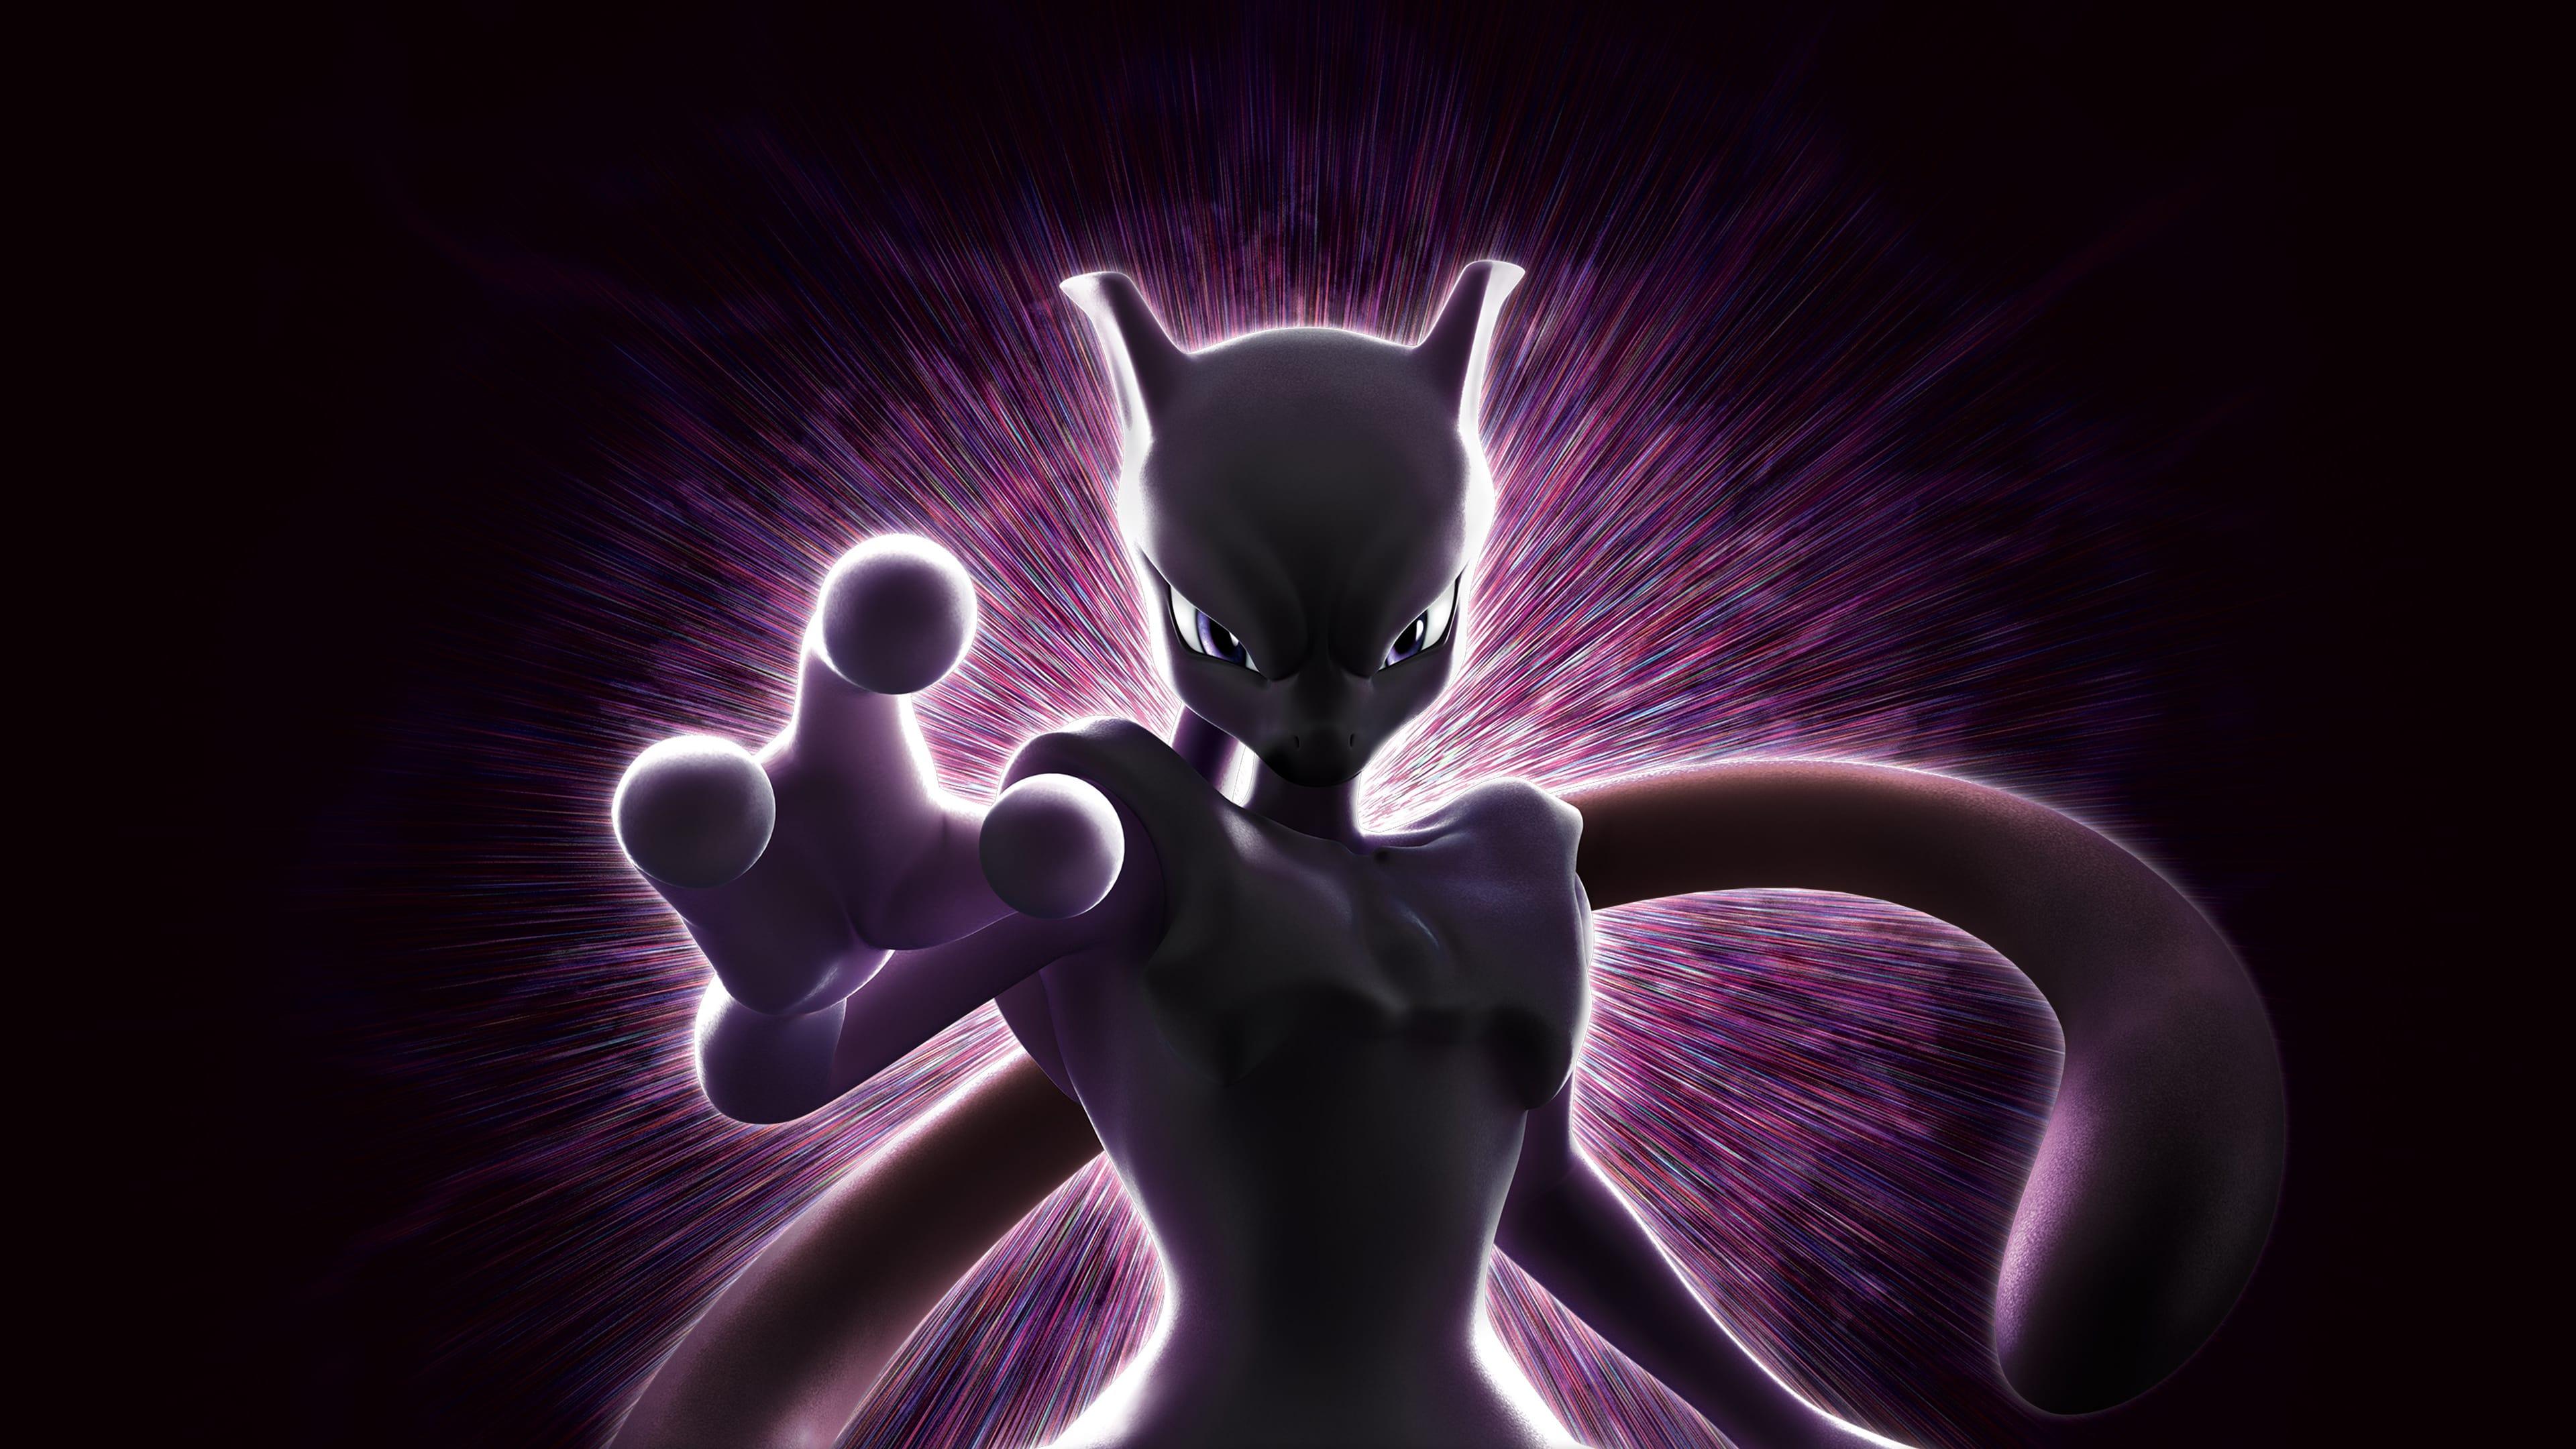 Pokémon the Movie: Mewtwo Strikes Back - Evolution backdrop